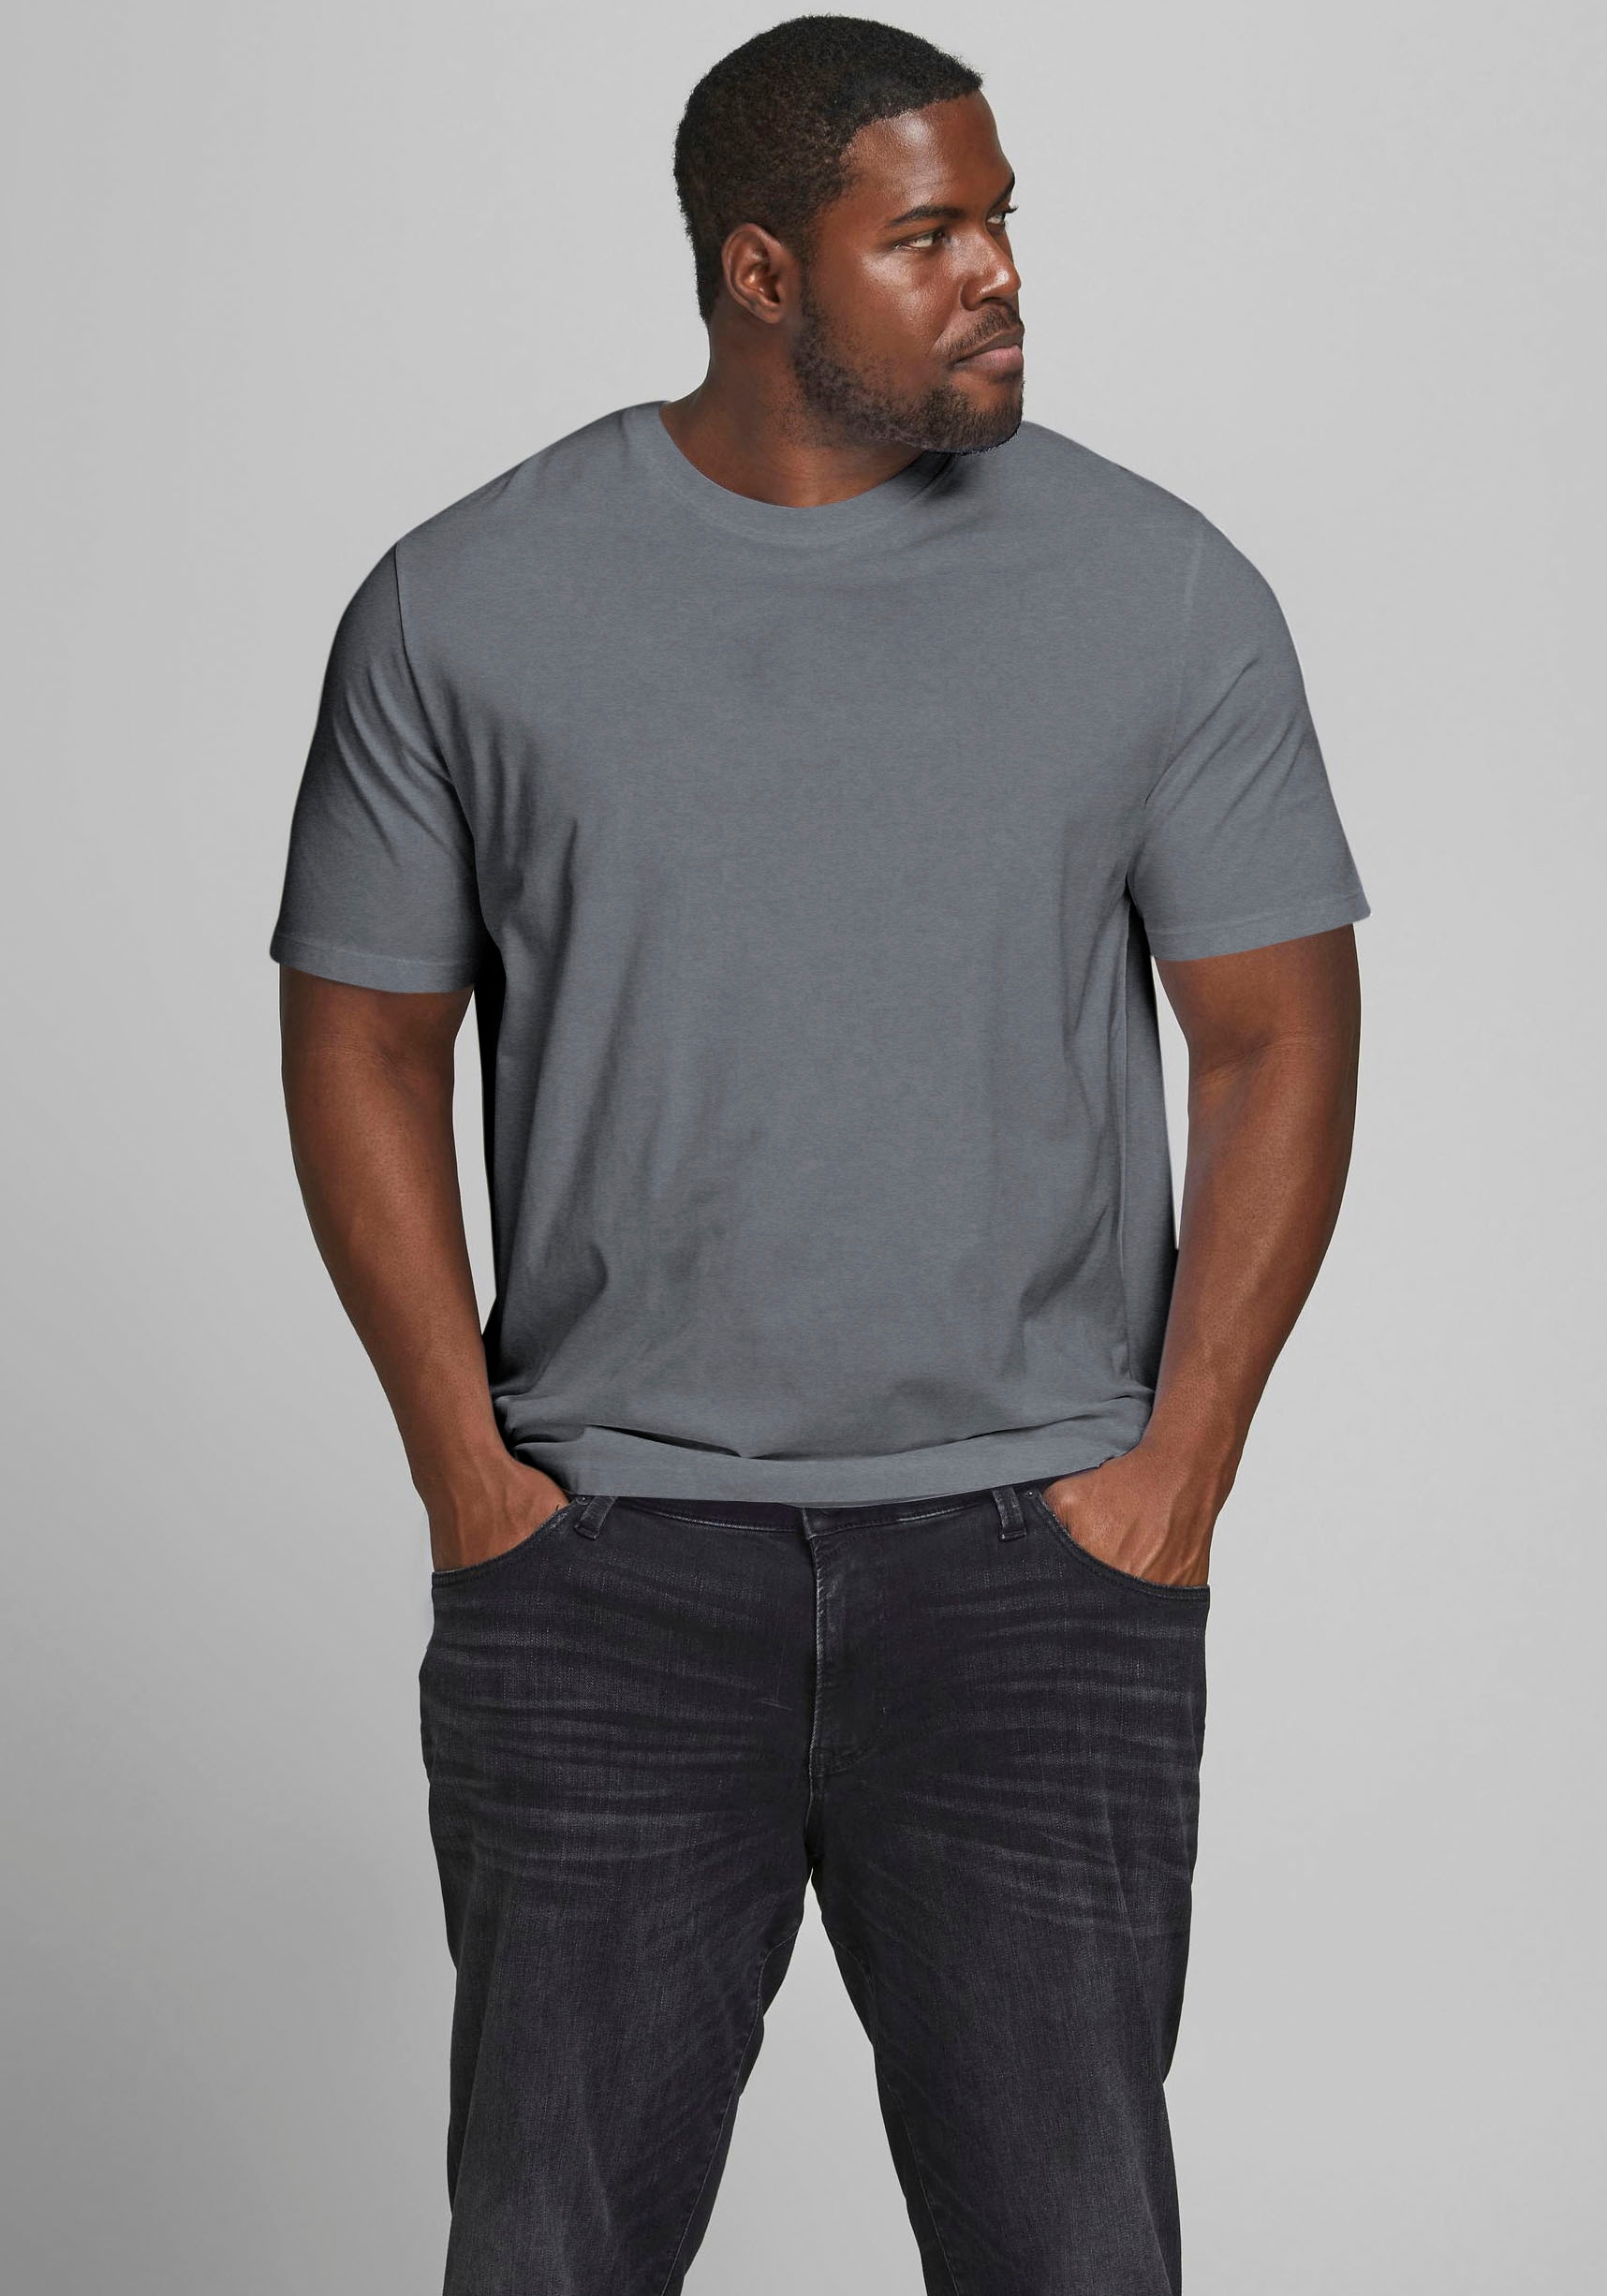 Jack & Jones PlusSize T-Shirt »NOA TEE«, mit abgerundetem Saum, bis Grösse 6XL